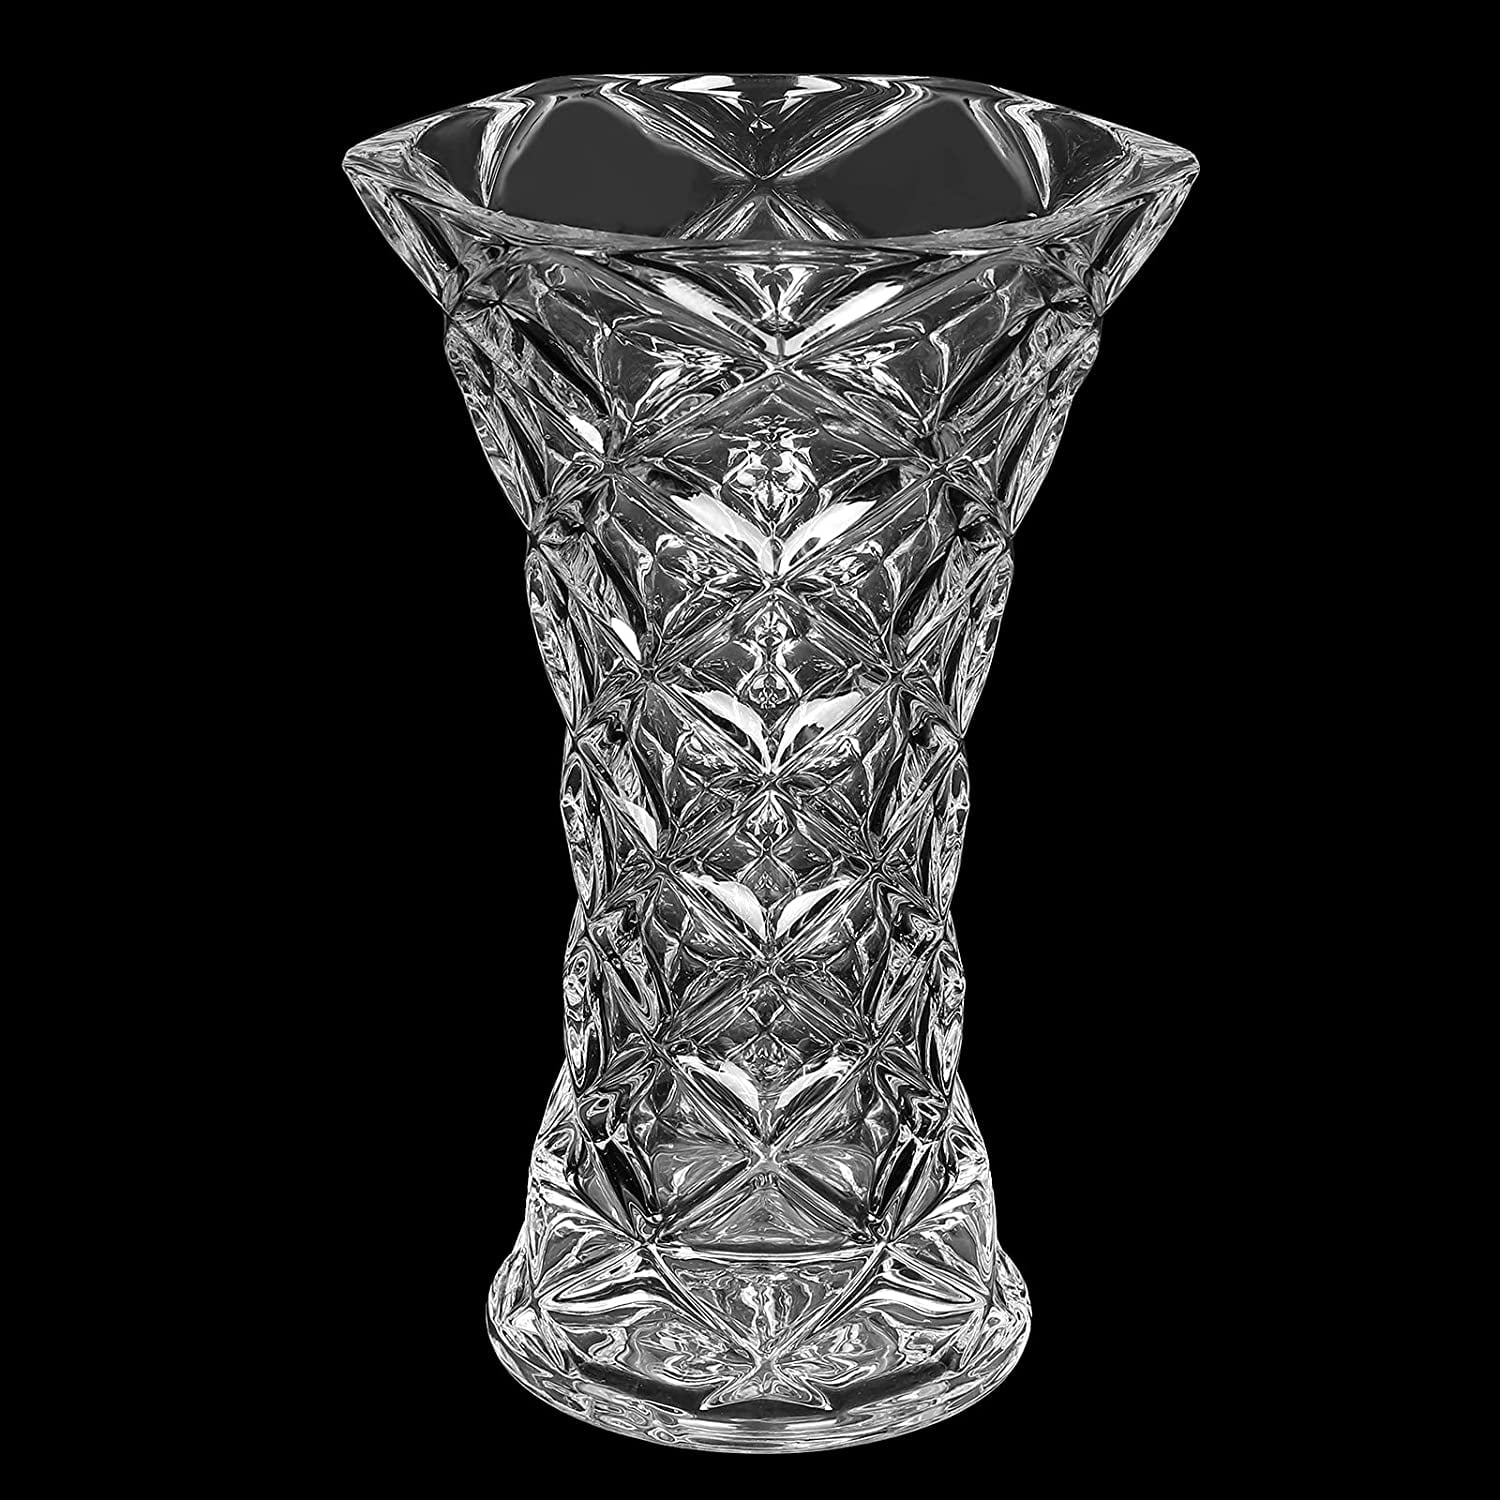 Details about   Footed Vase 15" Crystal Red Bud Vase Home Decor Bohemia Crystal Flower Vase 